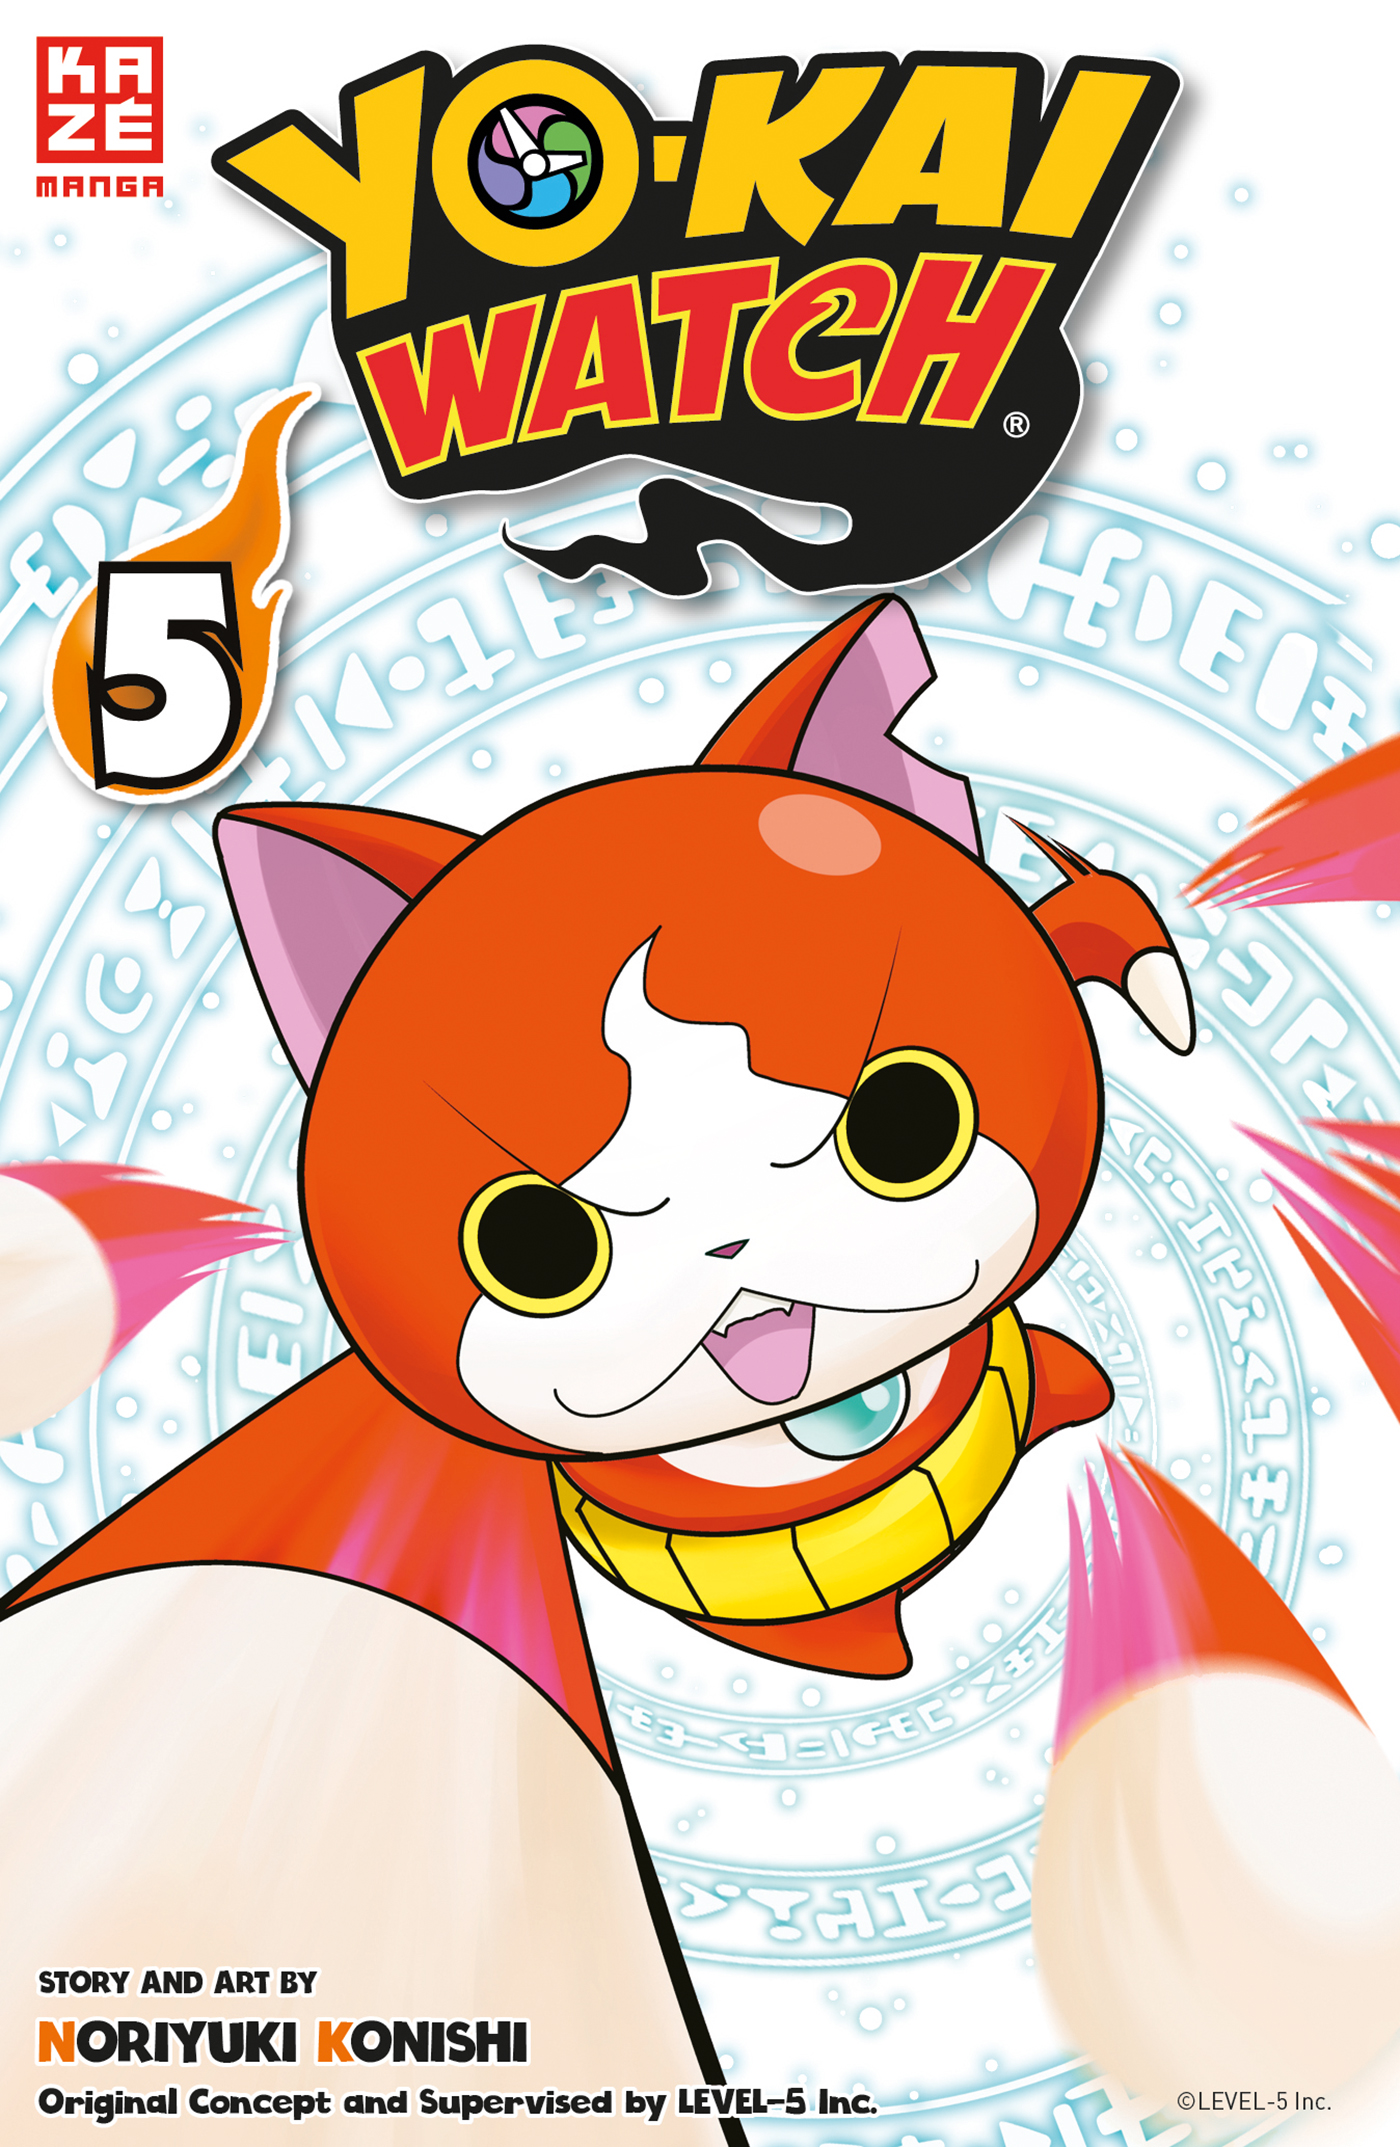 5 Band - Yo-Kai Watch